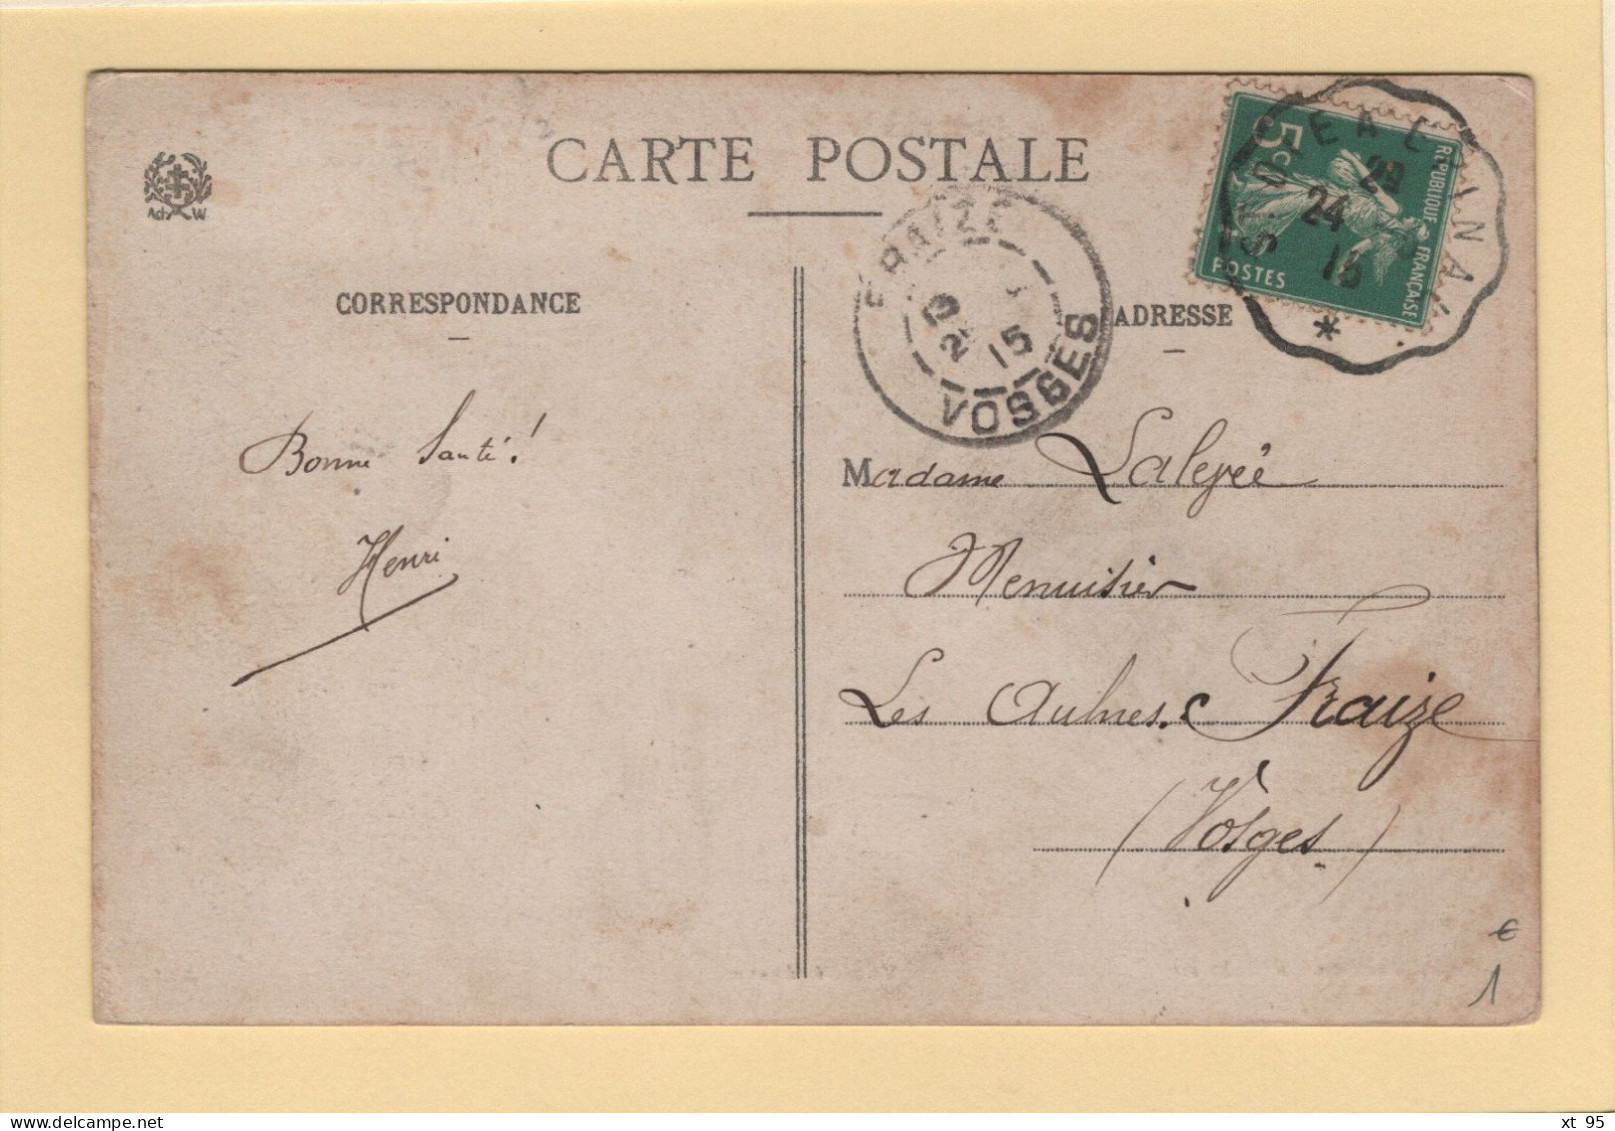 Convoyeur St Die A Epinal - 1915 - Posta Ferroviaria